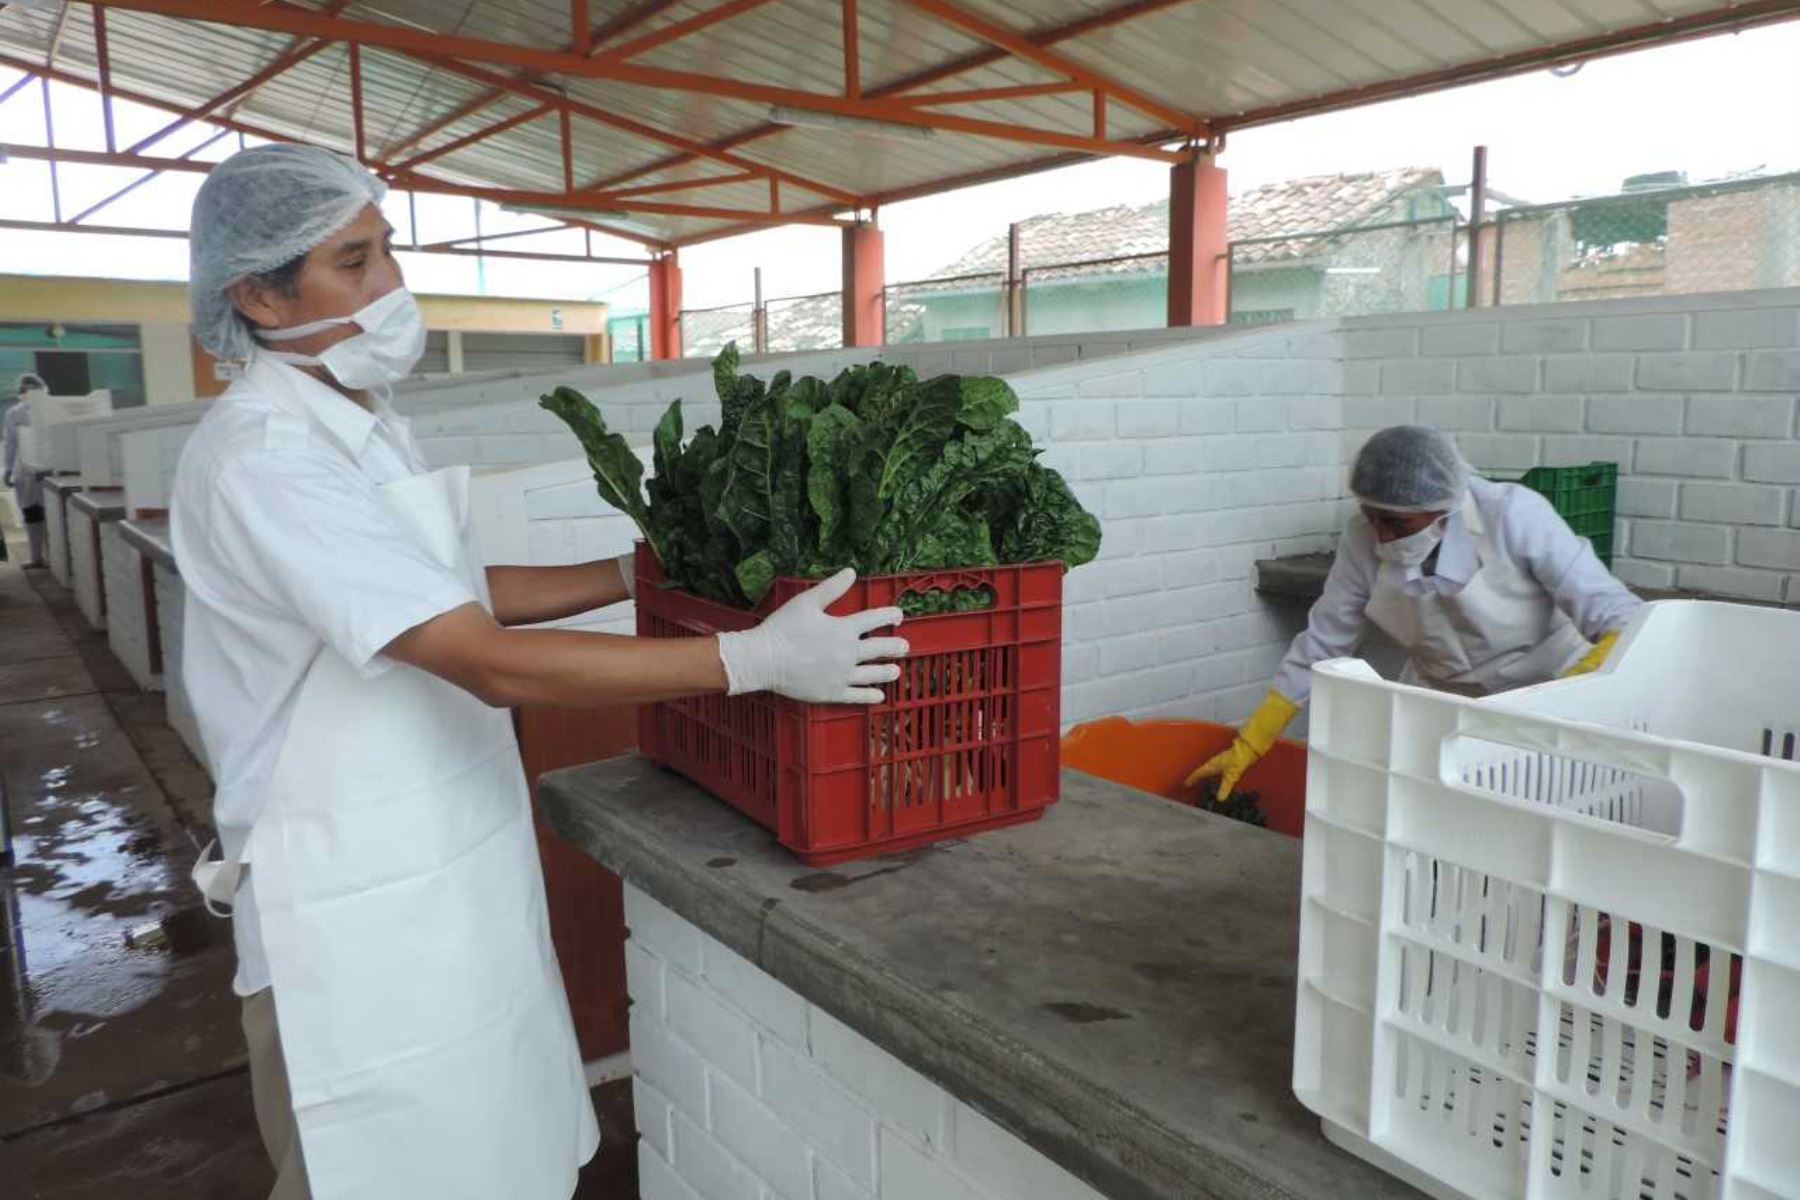 El Programa Nacional de Alimentación Escolar Qali Warma lanzó en el distrito de El Tambo la iniciativa piloto “Escuelas Tambinas Saludables”, a fin de contribuir a una alimentación nutritiva y reducir los índices de anemia en esa localidad de la provincia de Huancayo, en la región Junín.